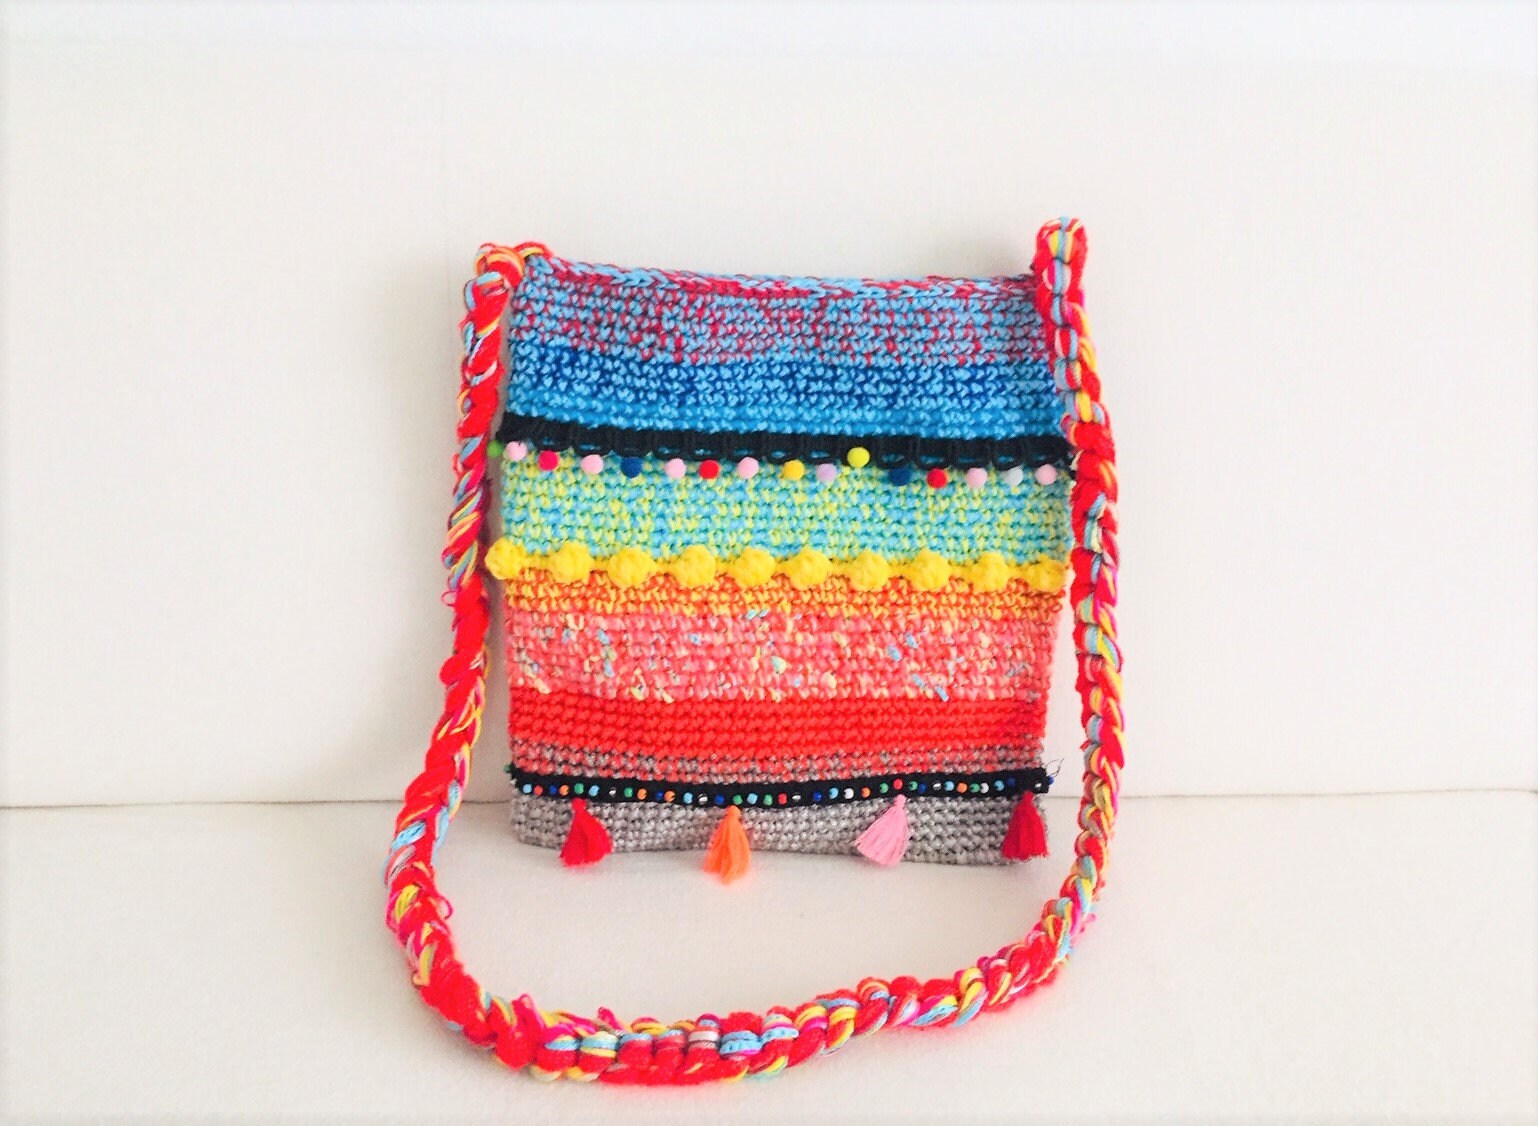 Colorful Crocheted Tote Bag Storage Bag Shoulder Bag - Etsy